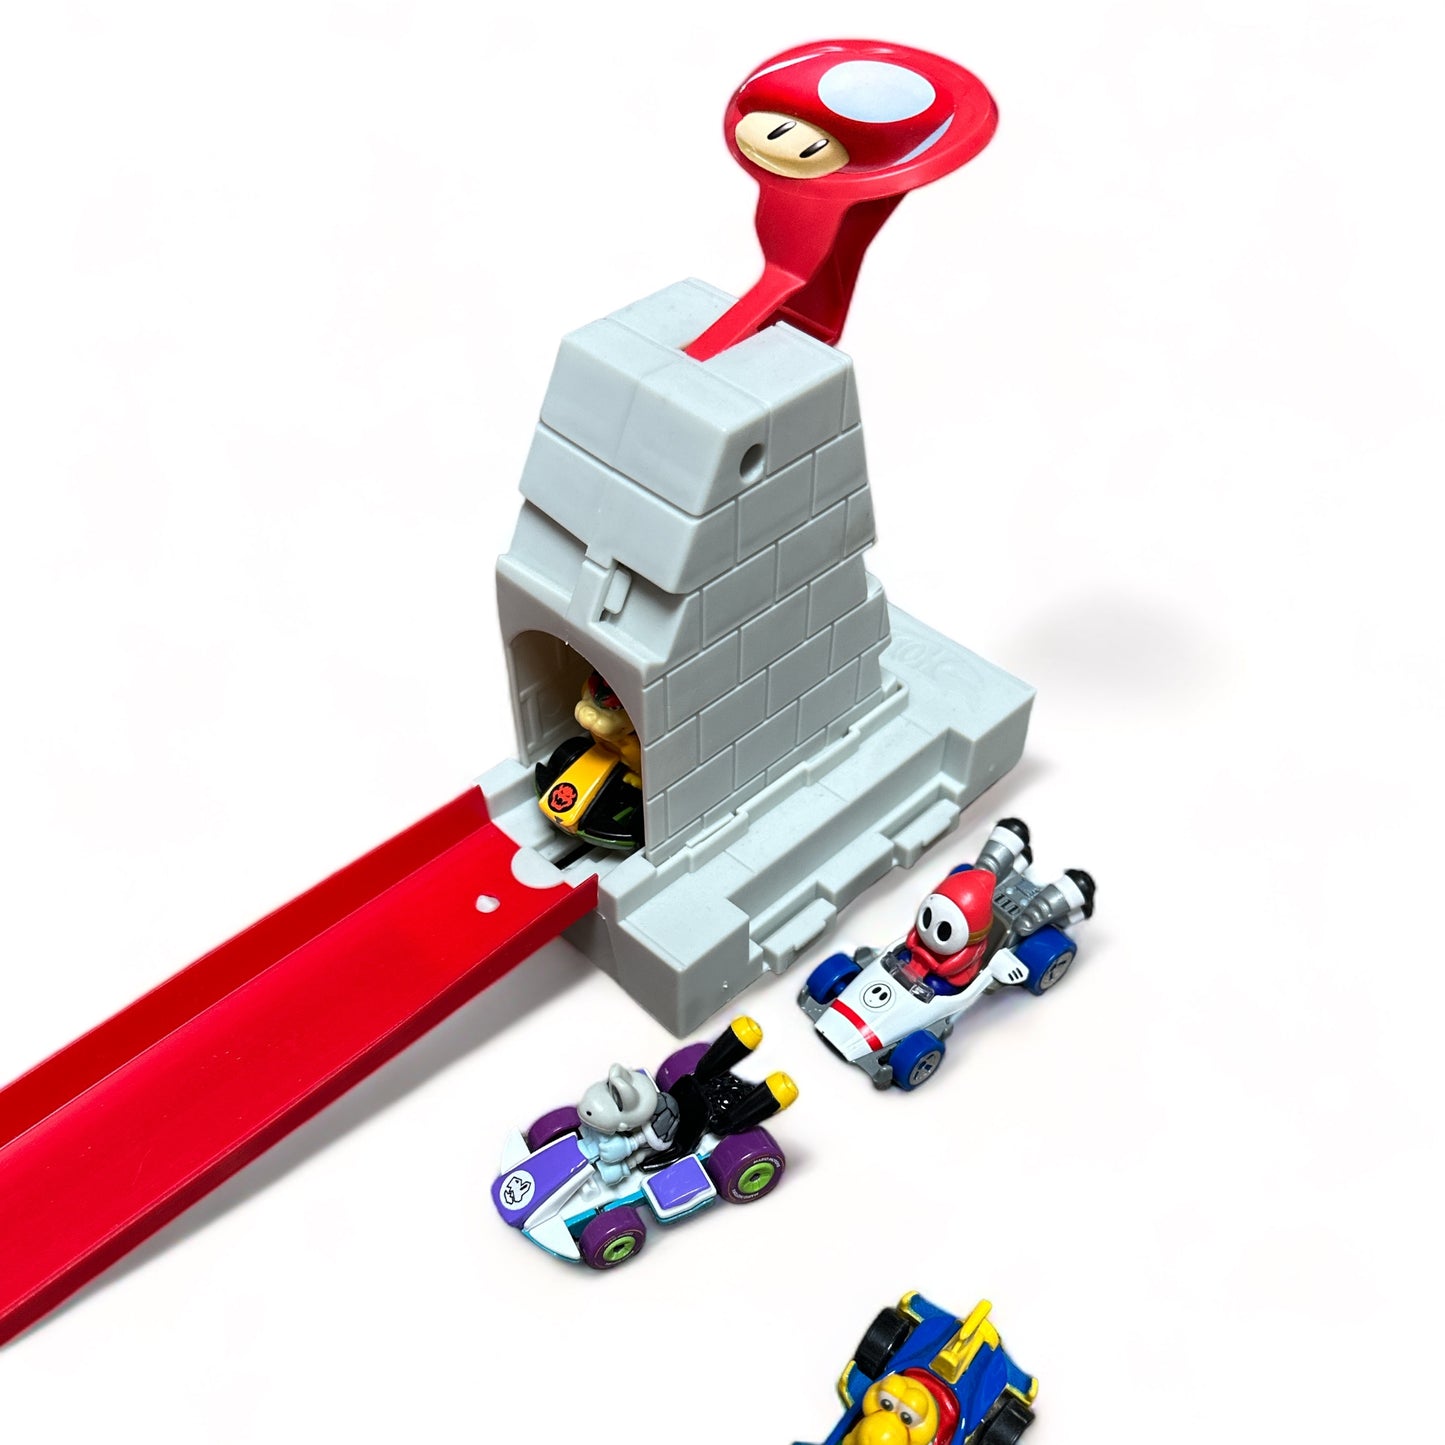 Mario Kart Bowser's Castle Chaos Modular Track